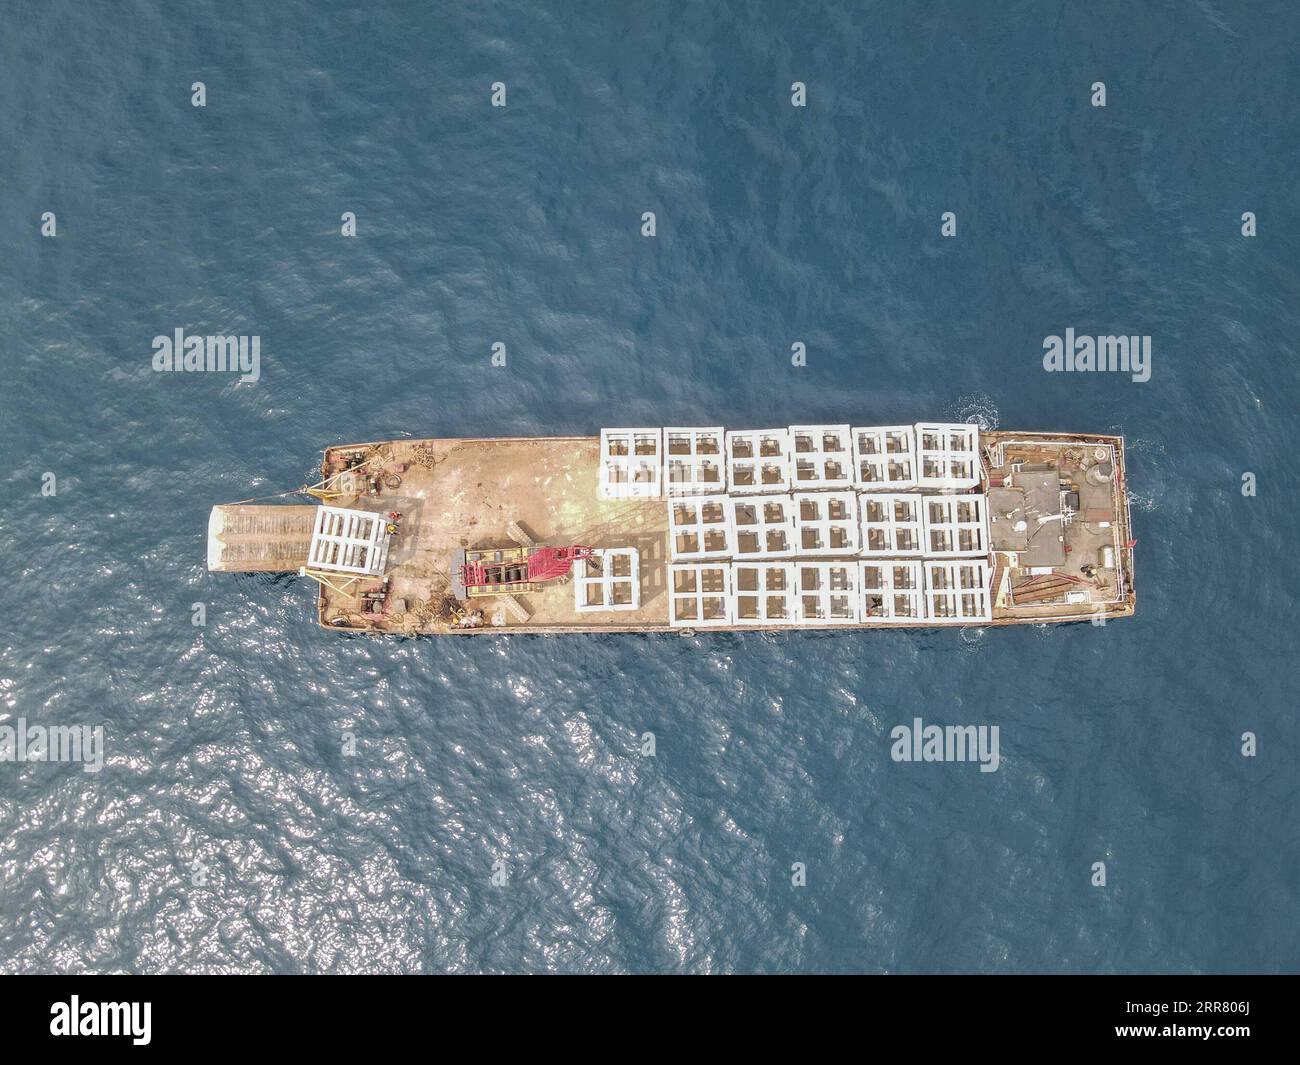 210410 -- HAIKOU, 10 aprile 2021 -- in questa foto aerea scattata il 1° aprile 2021, il personale posava barriere artificiali intorno all'isola di Wuzhizhou nella città di Sanya, nella provincia di Hainan nella Cina meridionale. L'isola di Wuzhizhou ha lanciato un viaggio completo per costruire un ranch marino e ripristinare l'ecosistema marino, ponendo barriere artificiali sotto il mare e trapiantando coralli. Entro la fine del 2020, il ranch marino dell'isola di Wuzhizhou ha collocato 1.526 barriere coralline artificiali. E altri 870 saranno gettati entro un mese nella recente collocazione delle barriere artificiali. CHINA-HAINAN-SANYA-MARINE RANCH CN ZHANGXLIYUN PUBLICATIONXNOTXINXCHN Foto Stock